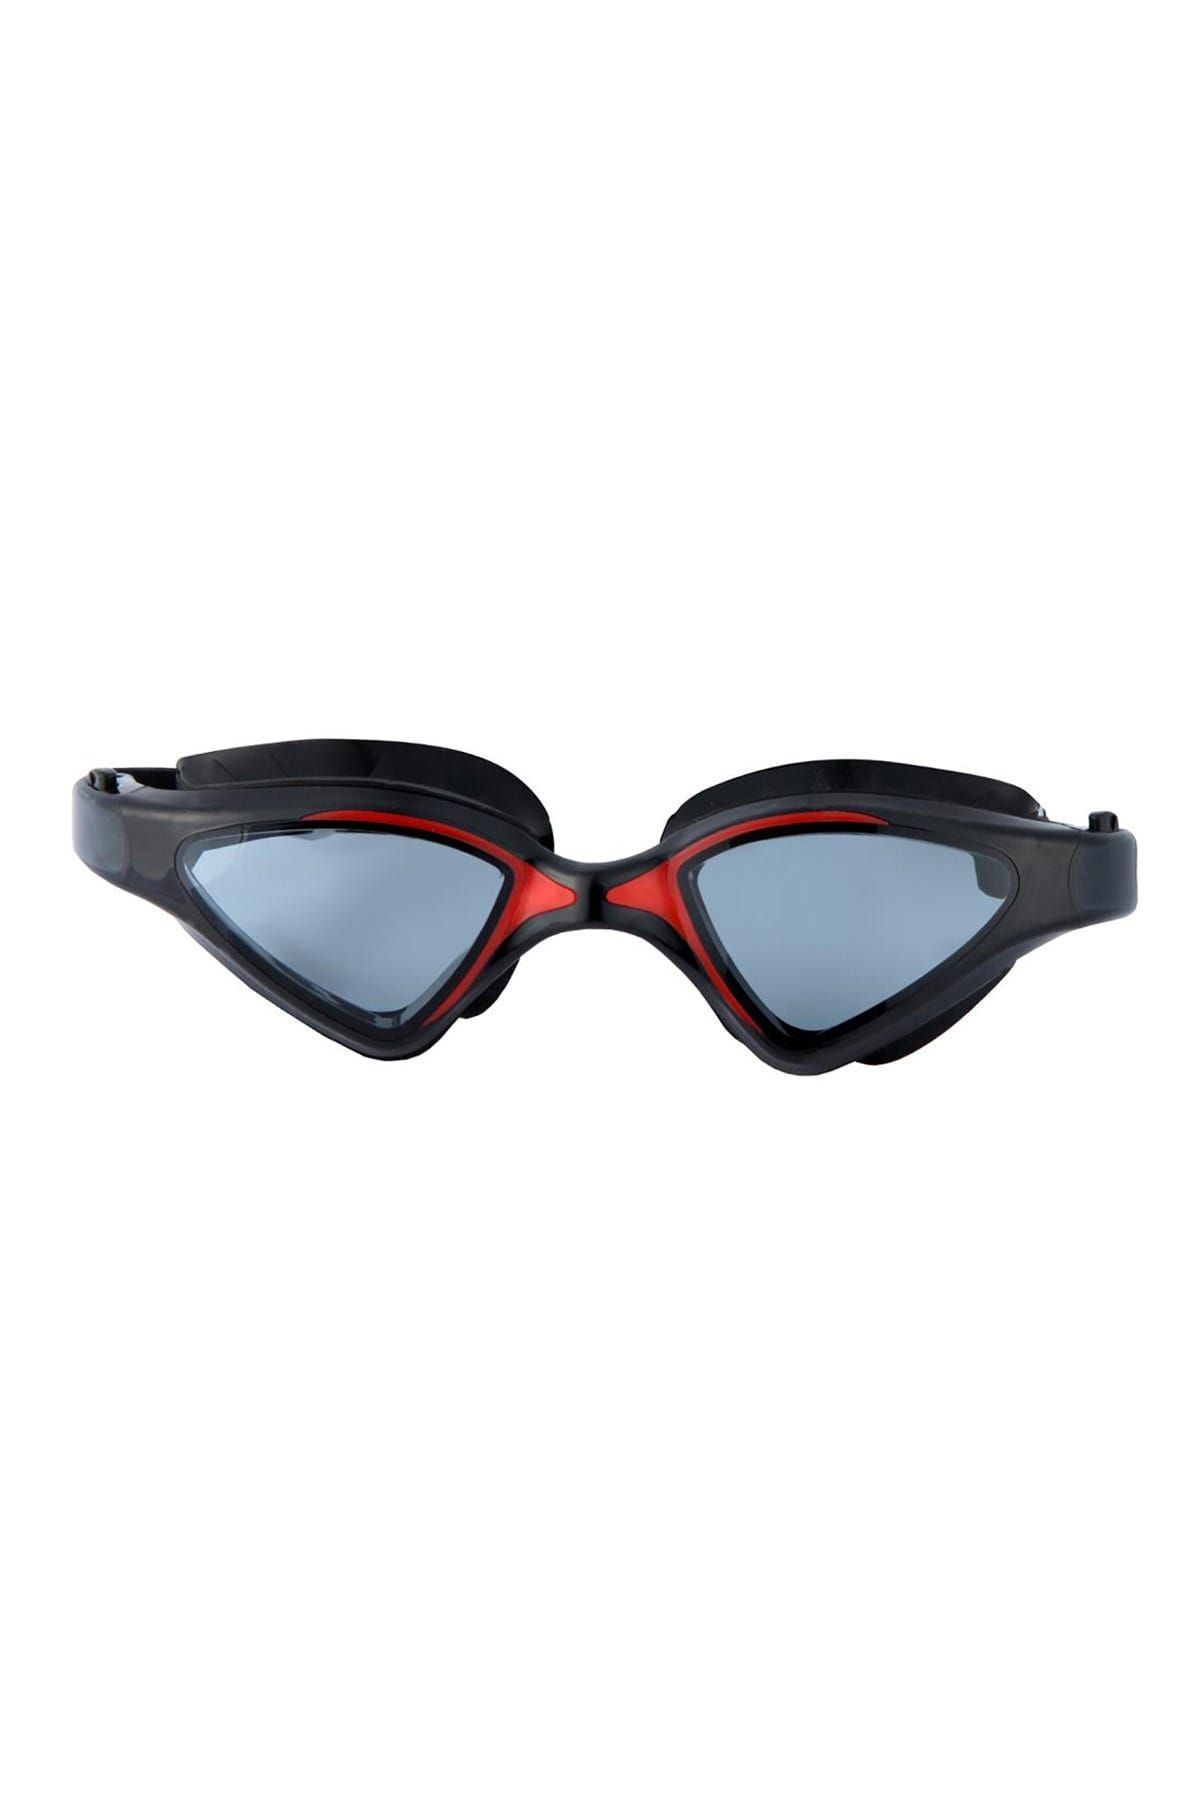 Busso GS20 Yetişkin Yüzücü Gözlüğü